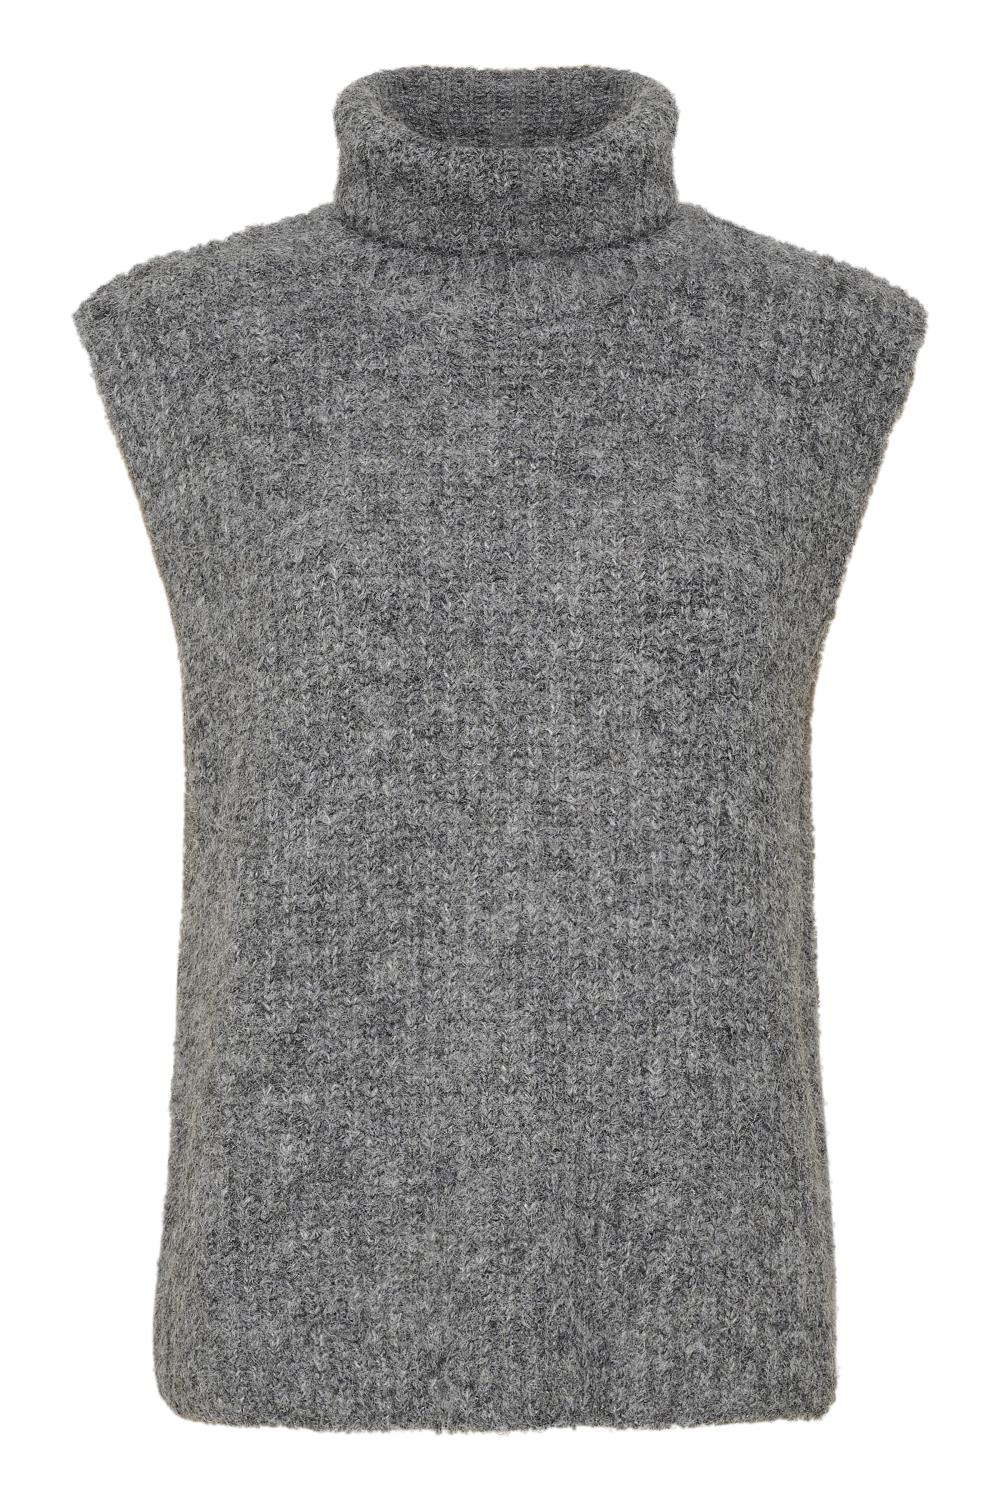 My Essential Wardrobe Meena Knit Vest, grå